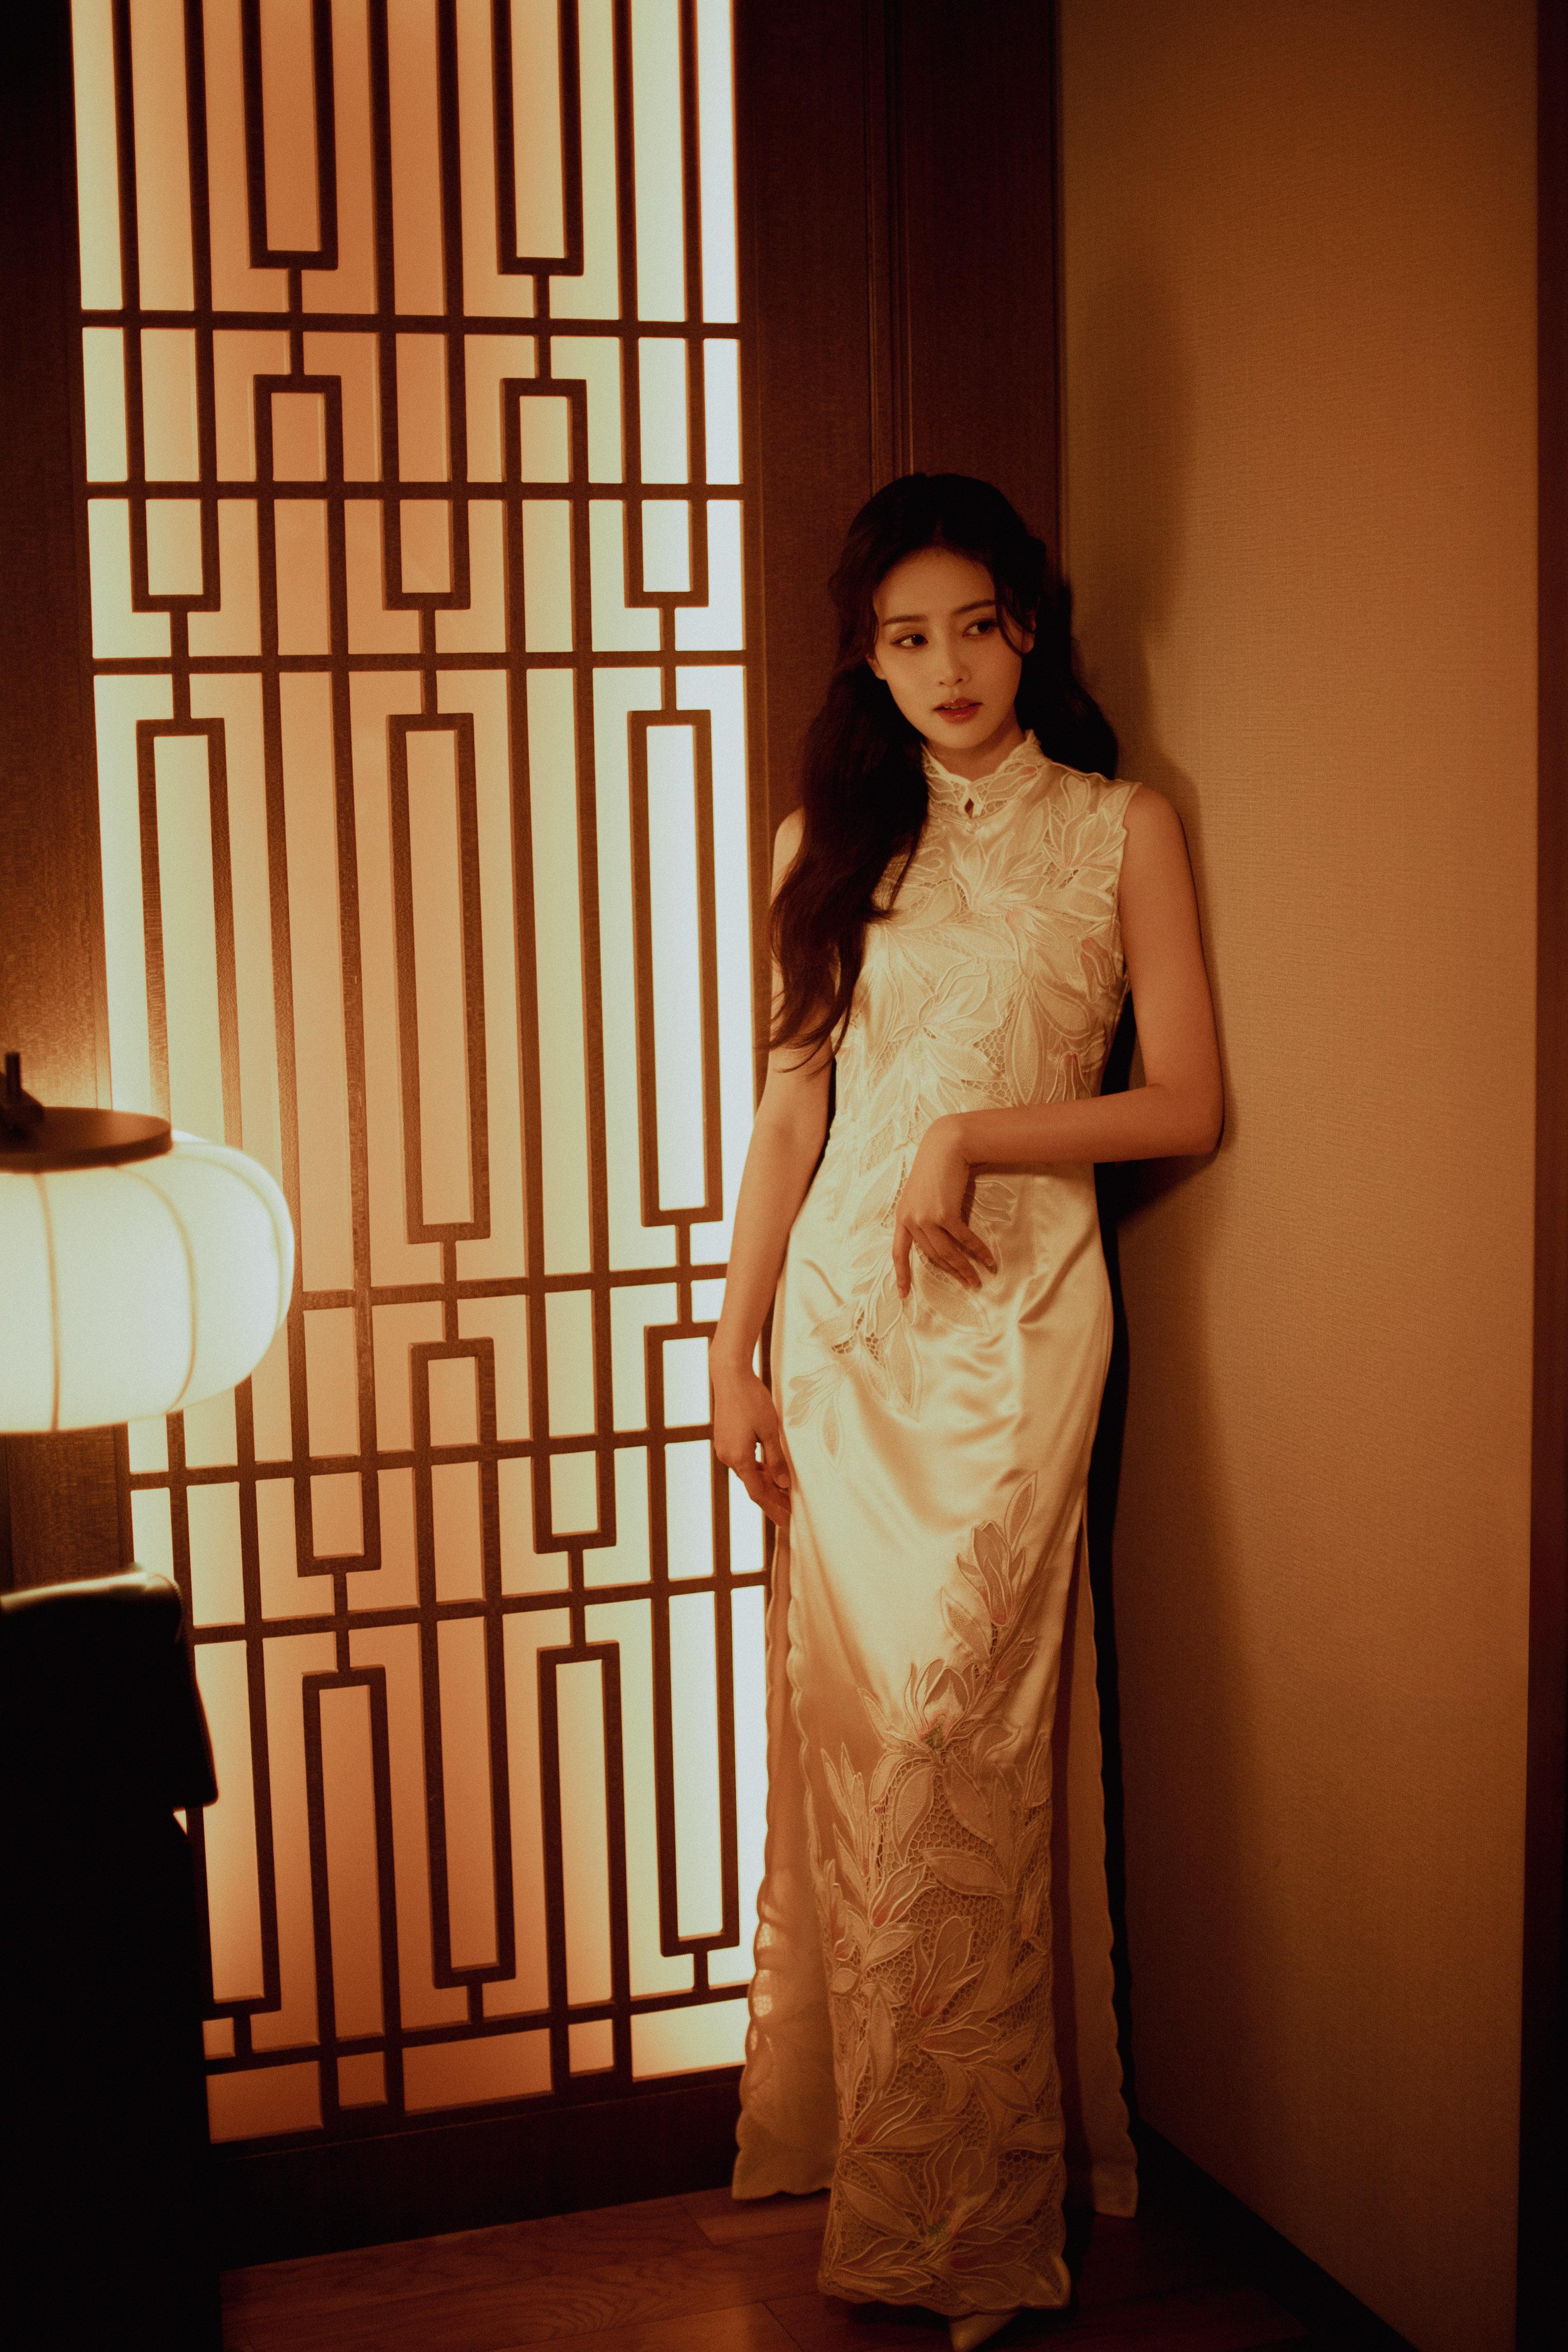 白鹿跨年复古造型写真发布 身穿白色刺绣旗袍优雅温婉,2